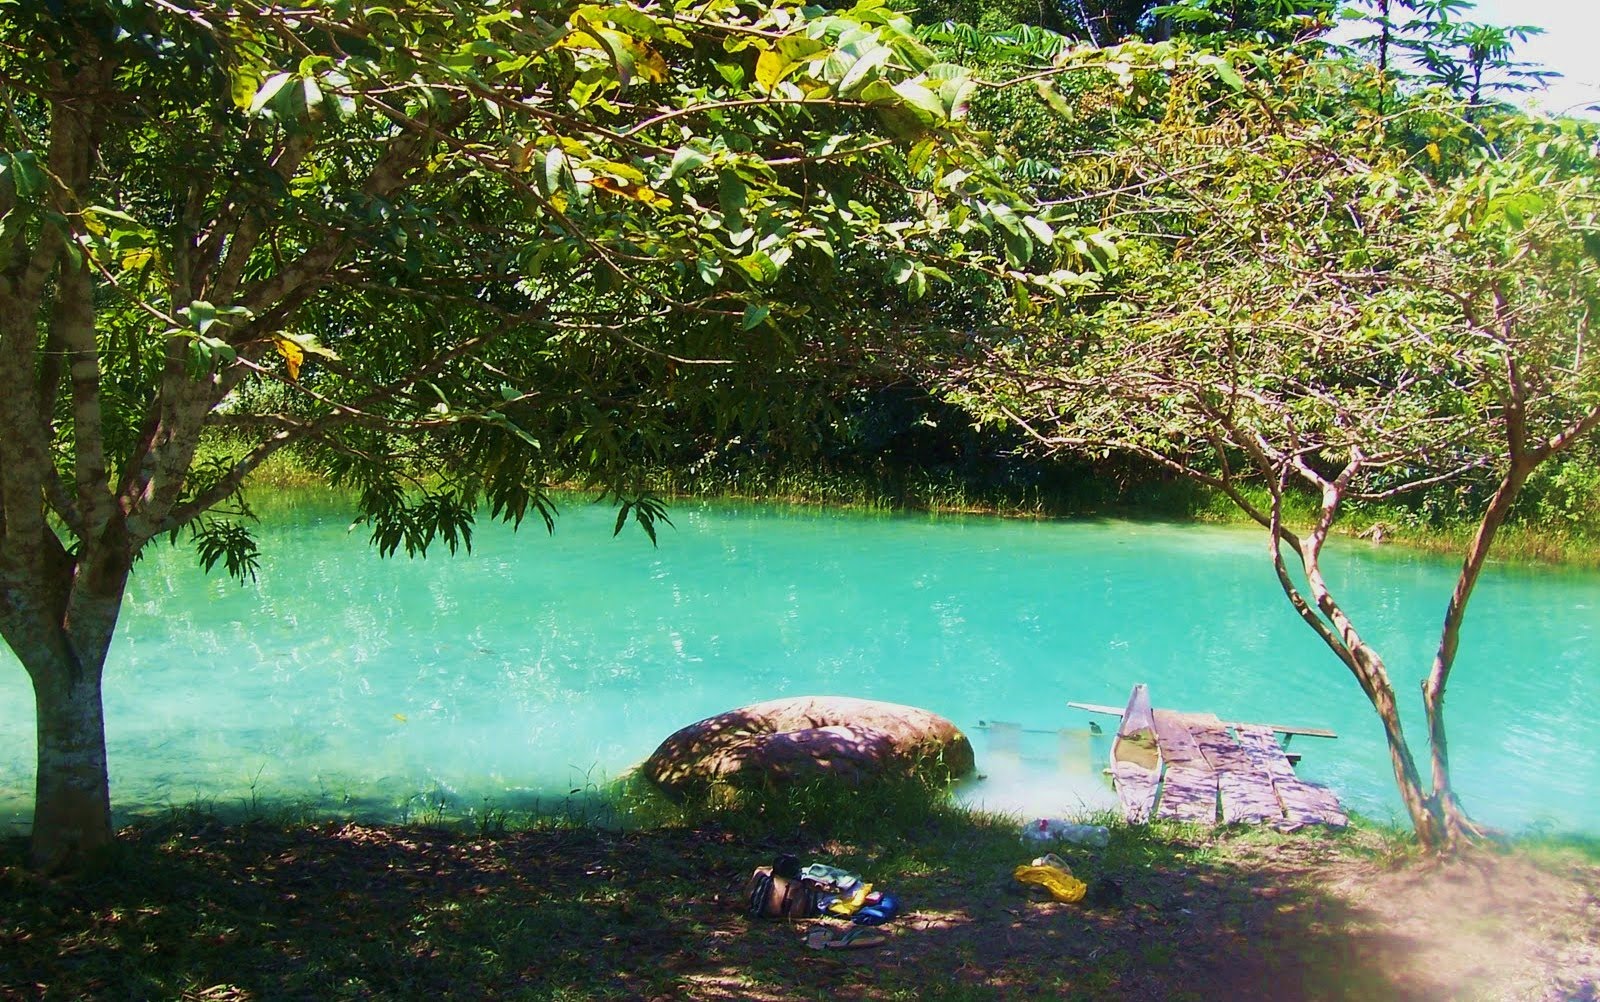 Resultado de imagem para lagoa azul amazonas